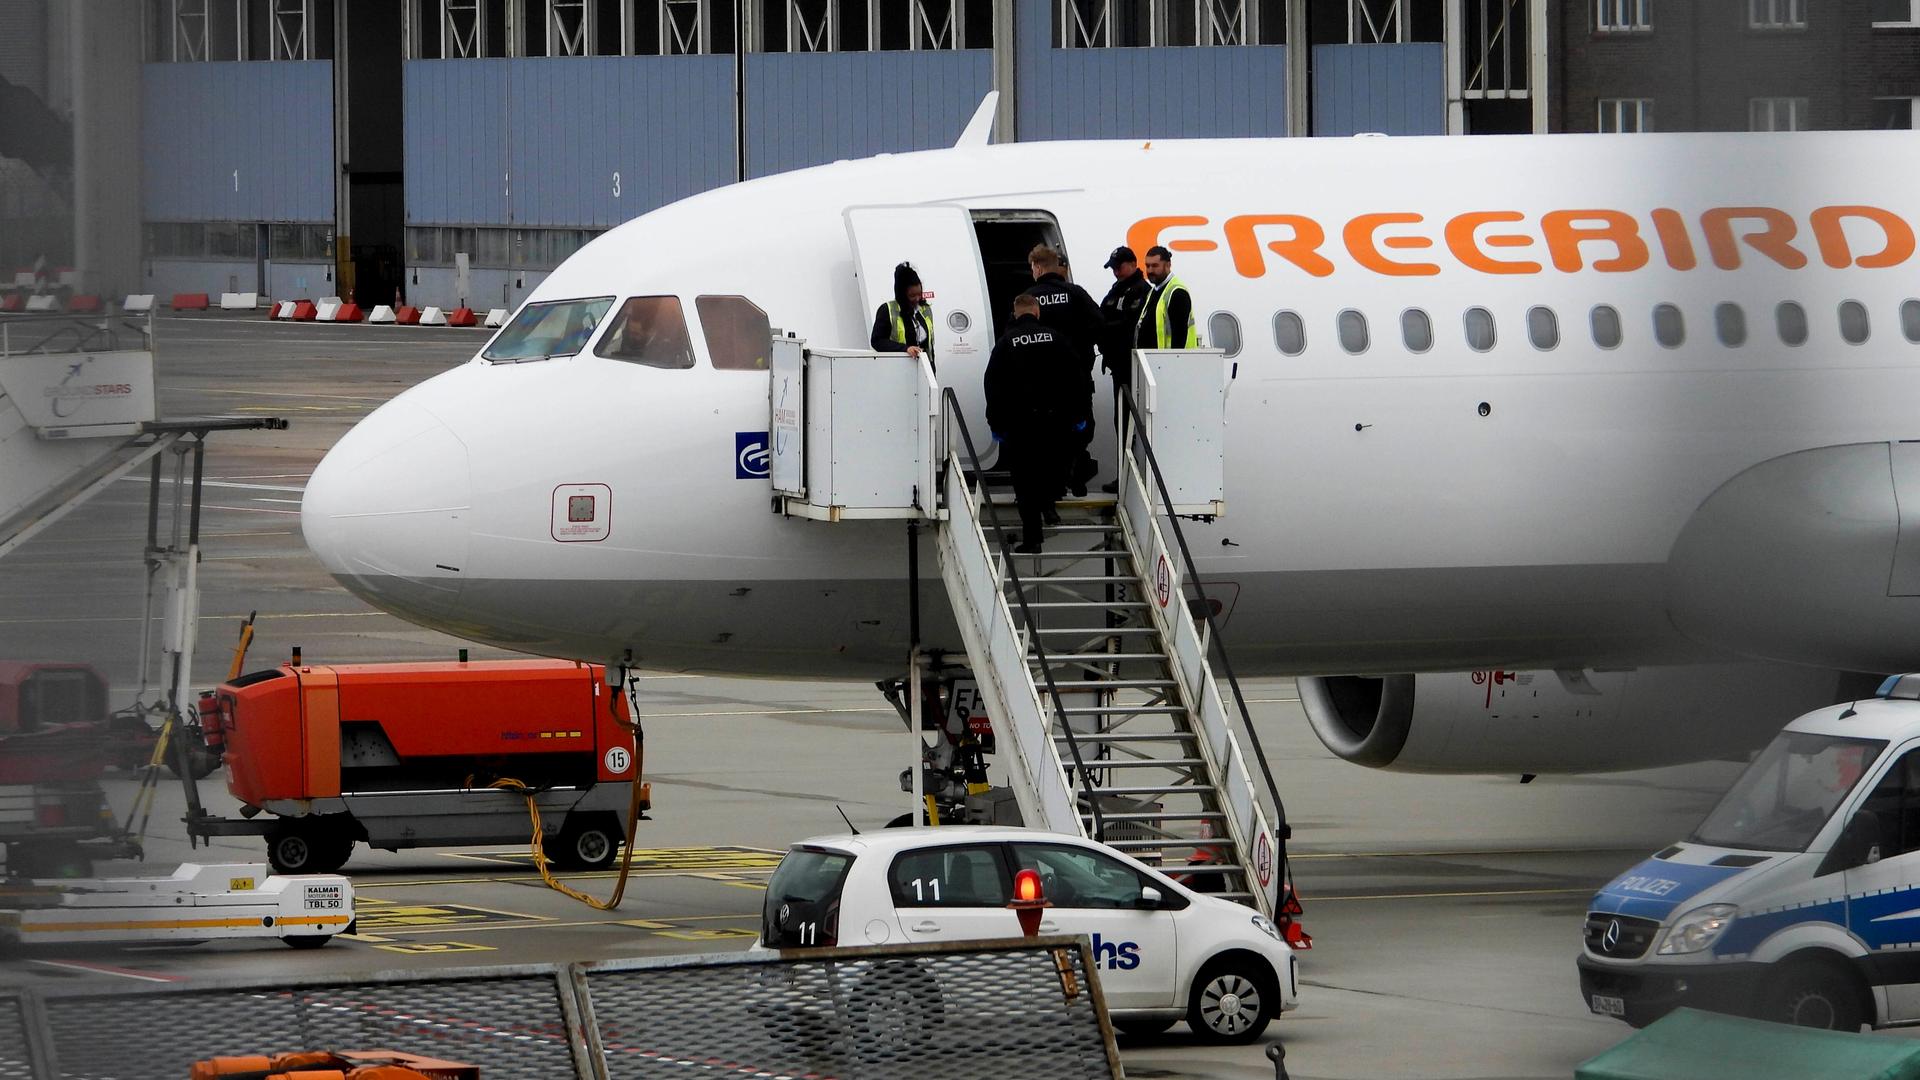 Abschiebung einer zweistelligen Zahl von Personen, die vom Hamburger Flughafen aus in den Irak mit der türkischen Fluggesellschaft Freebird geflogen werden. Am 11. Juni 2024 fand eine Sammelabschiebung von abgewiesenen Asylbewerbern in den Irak statt. Sie wurden mit einem starken Polizeiaufgebot von der Öffentlichkeit abgeschirmt.